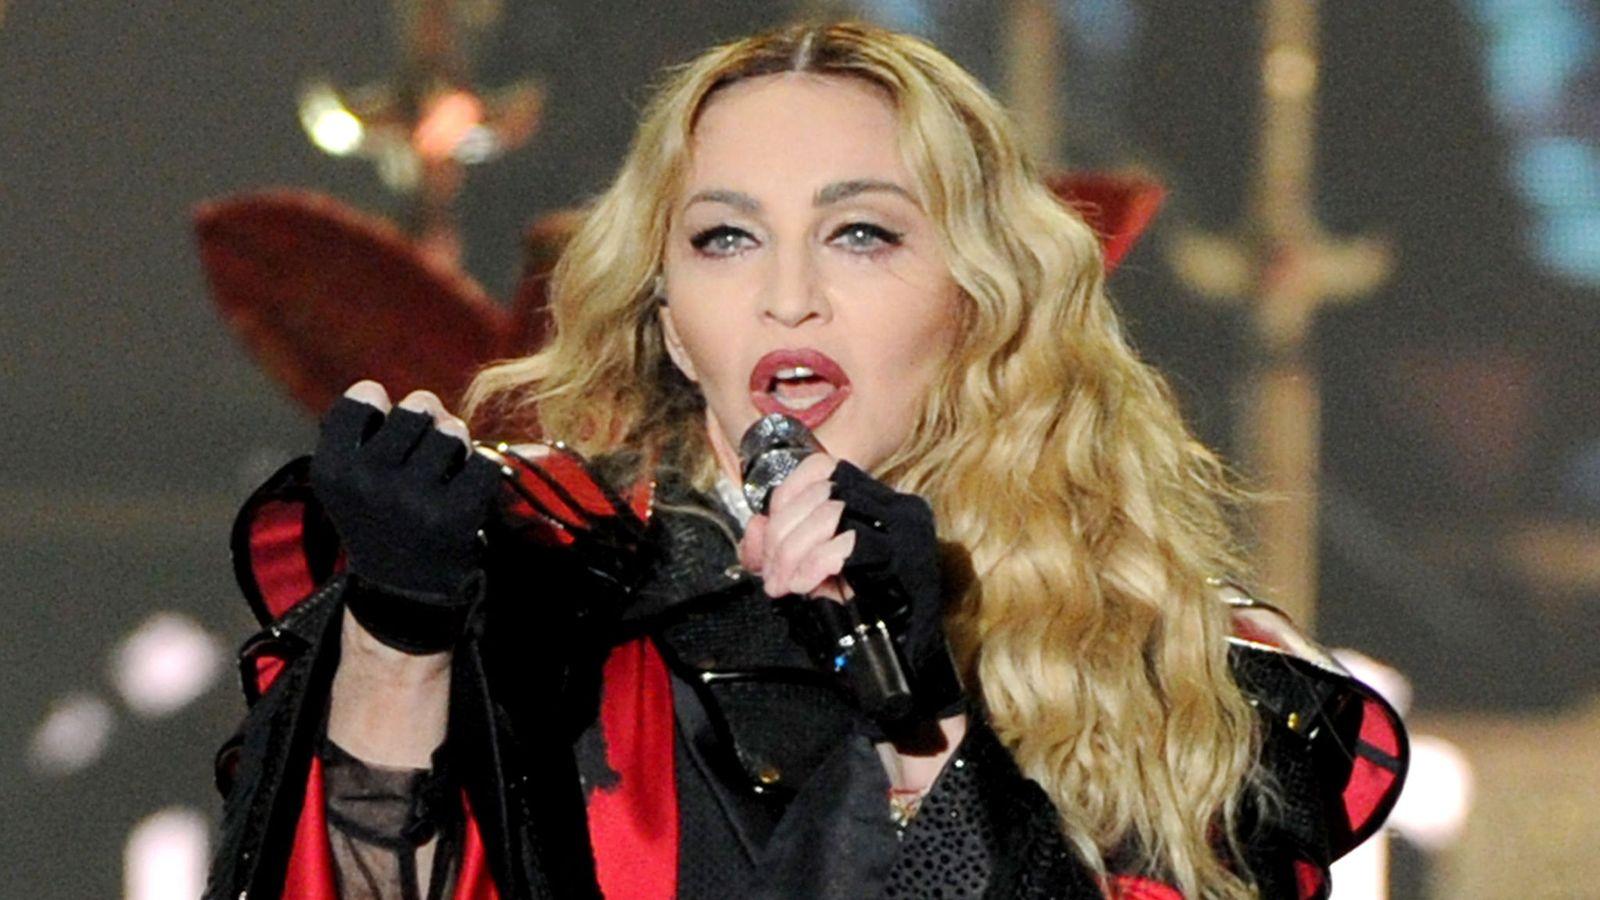 Diretor de Rocketman e Bohemian Rhapsody quer fazer filme sobre Madonna